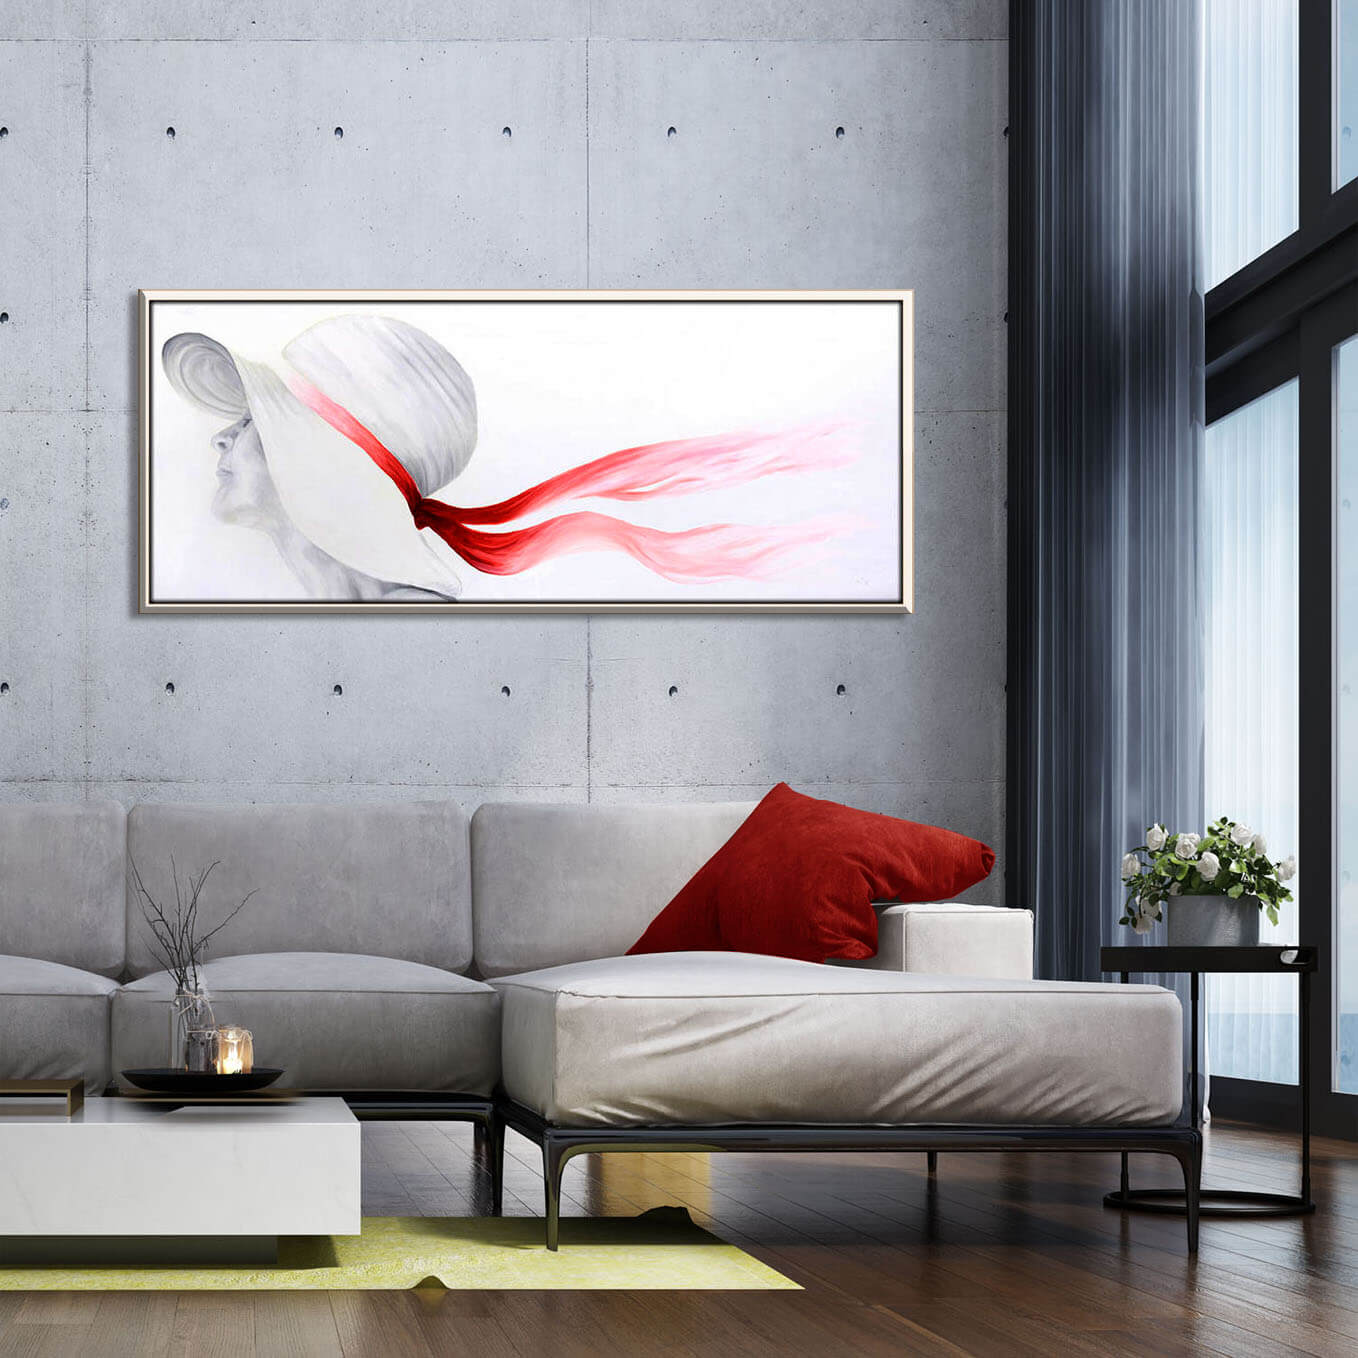 ציור נערה עם כובע וסרט אדום, בגוונים לבן אפור ואדום תמונה גדולה בסלון מעל ספה בהירה ציירת מירי לביא